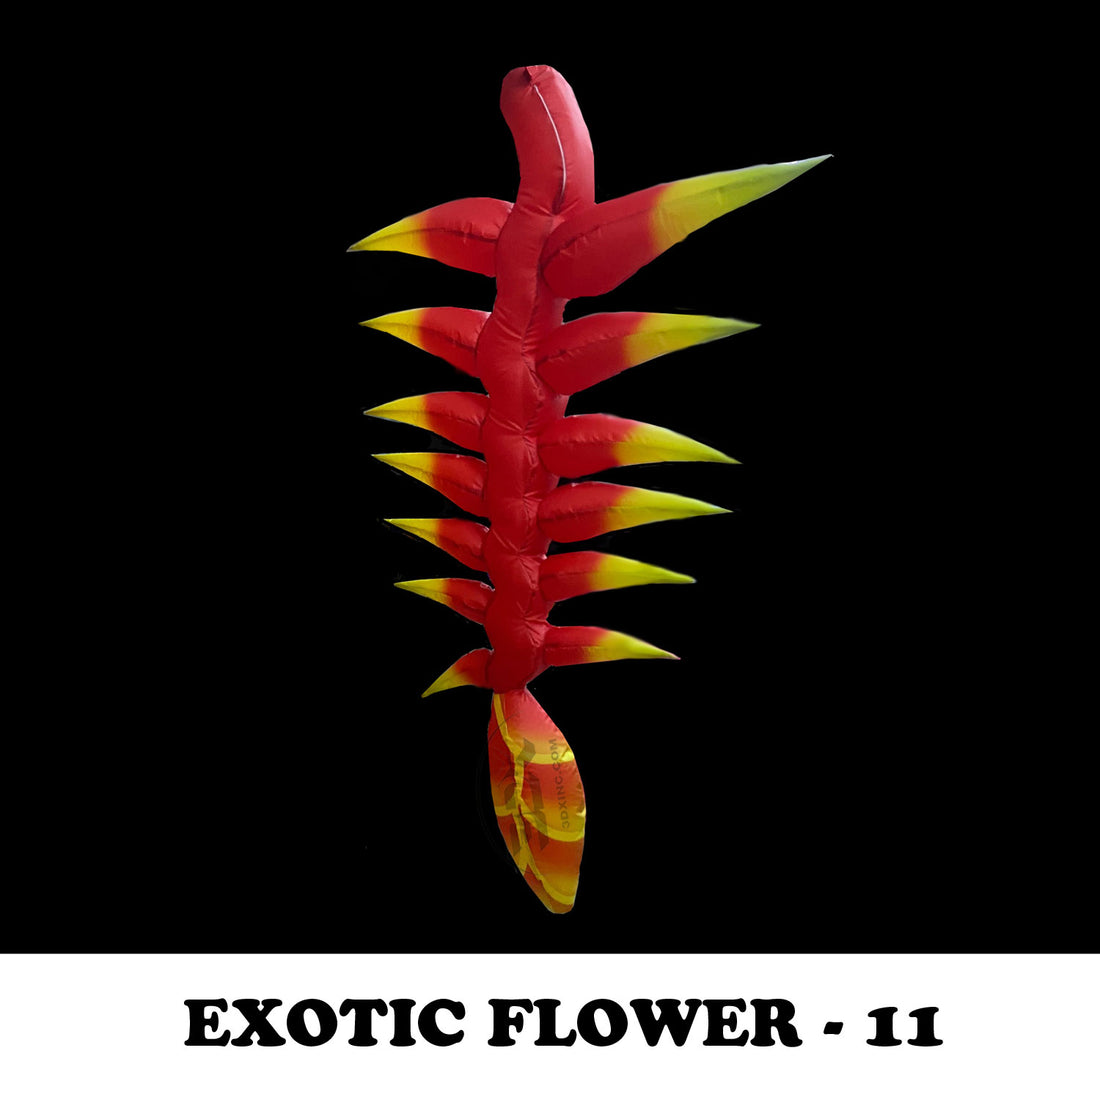 EXOTIC FLOWER - 11